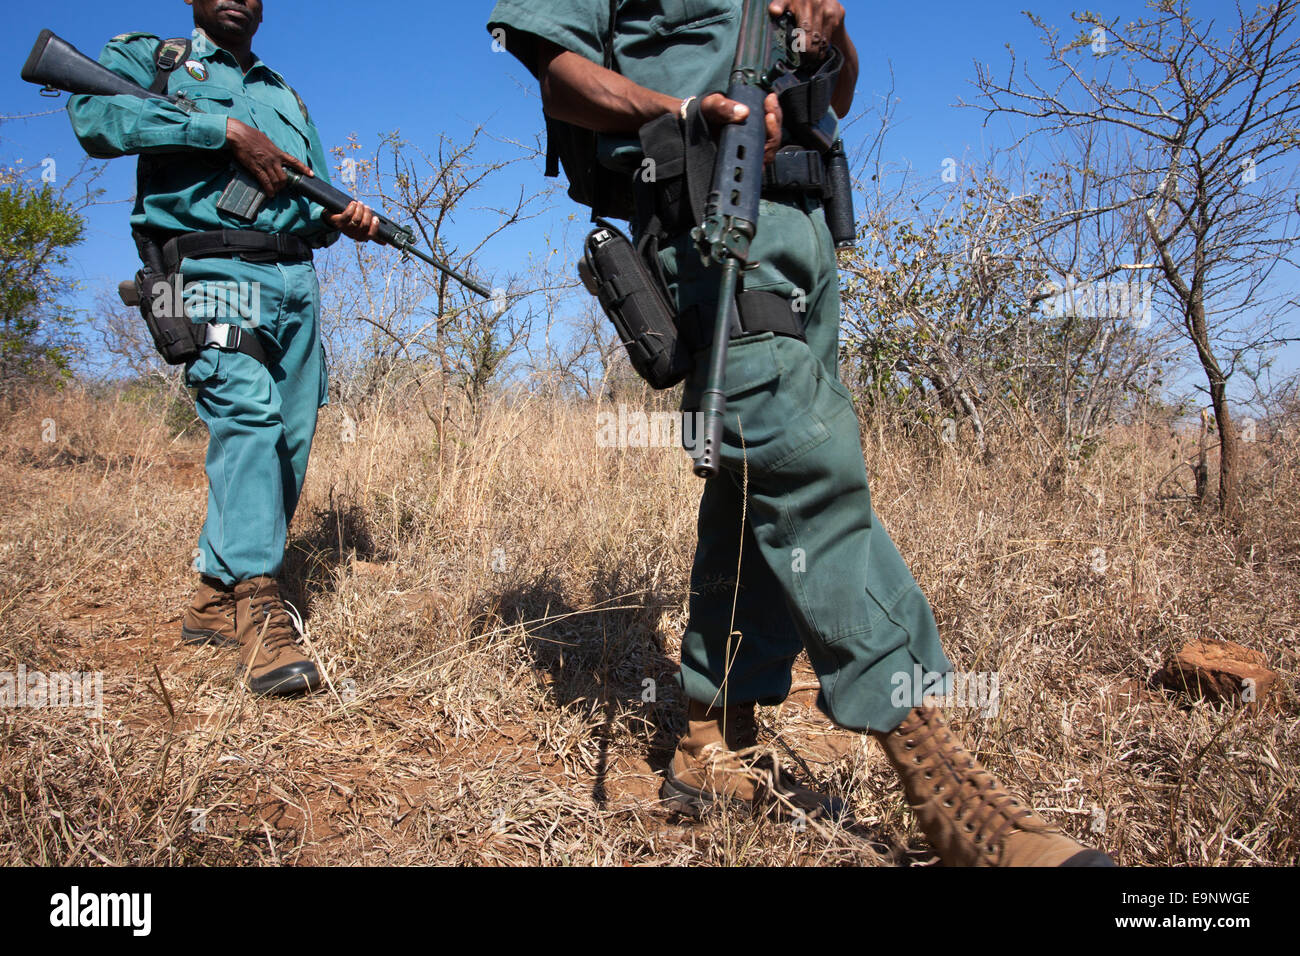 Anti-poaching unit on patrol in the bush, Ezemvelo KZN Wildlife, iMfolozi game reserve, KwaZulu-Natal, South Africa Stock Photo